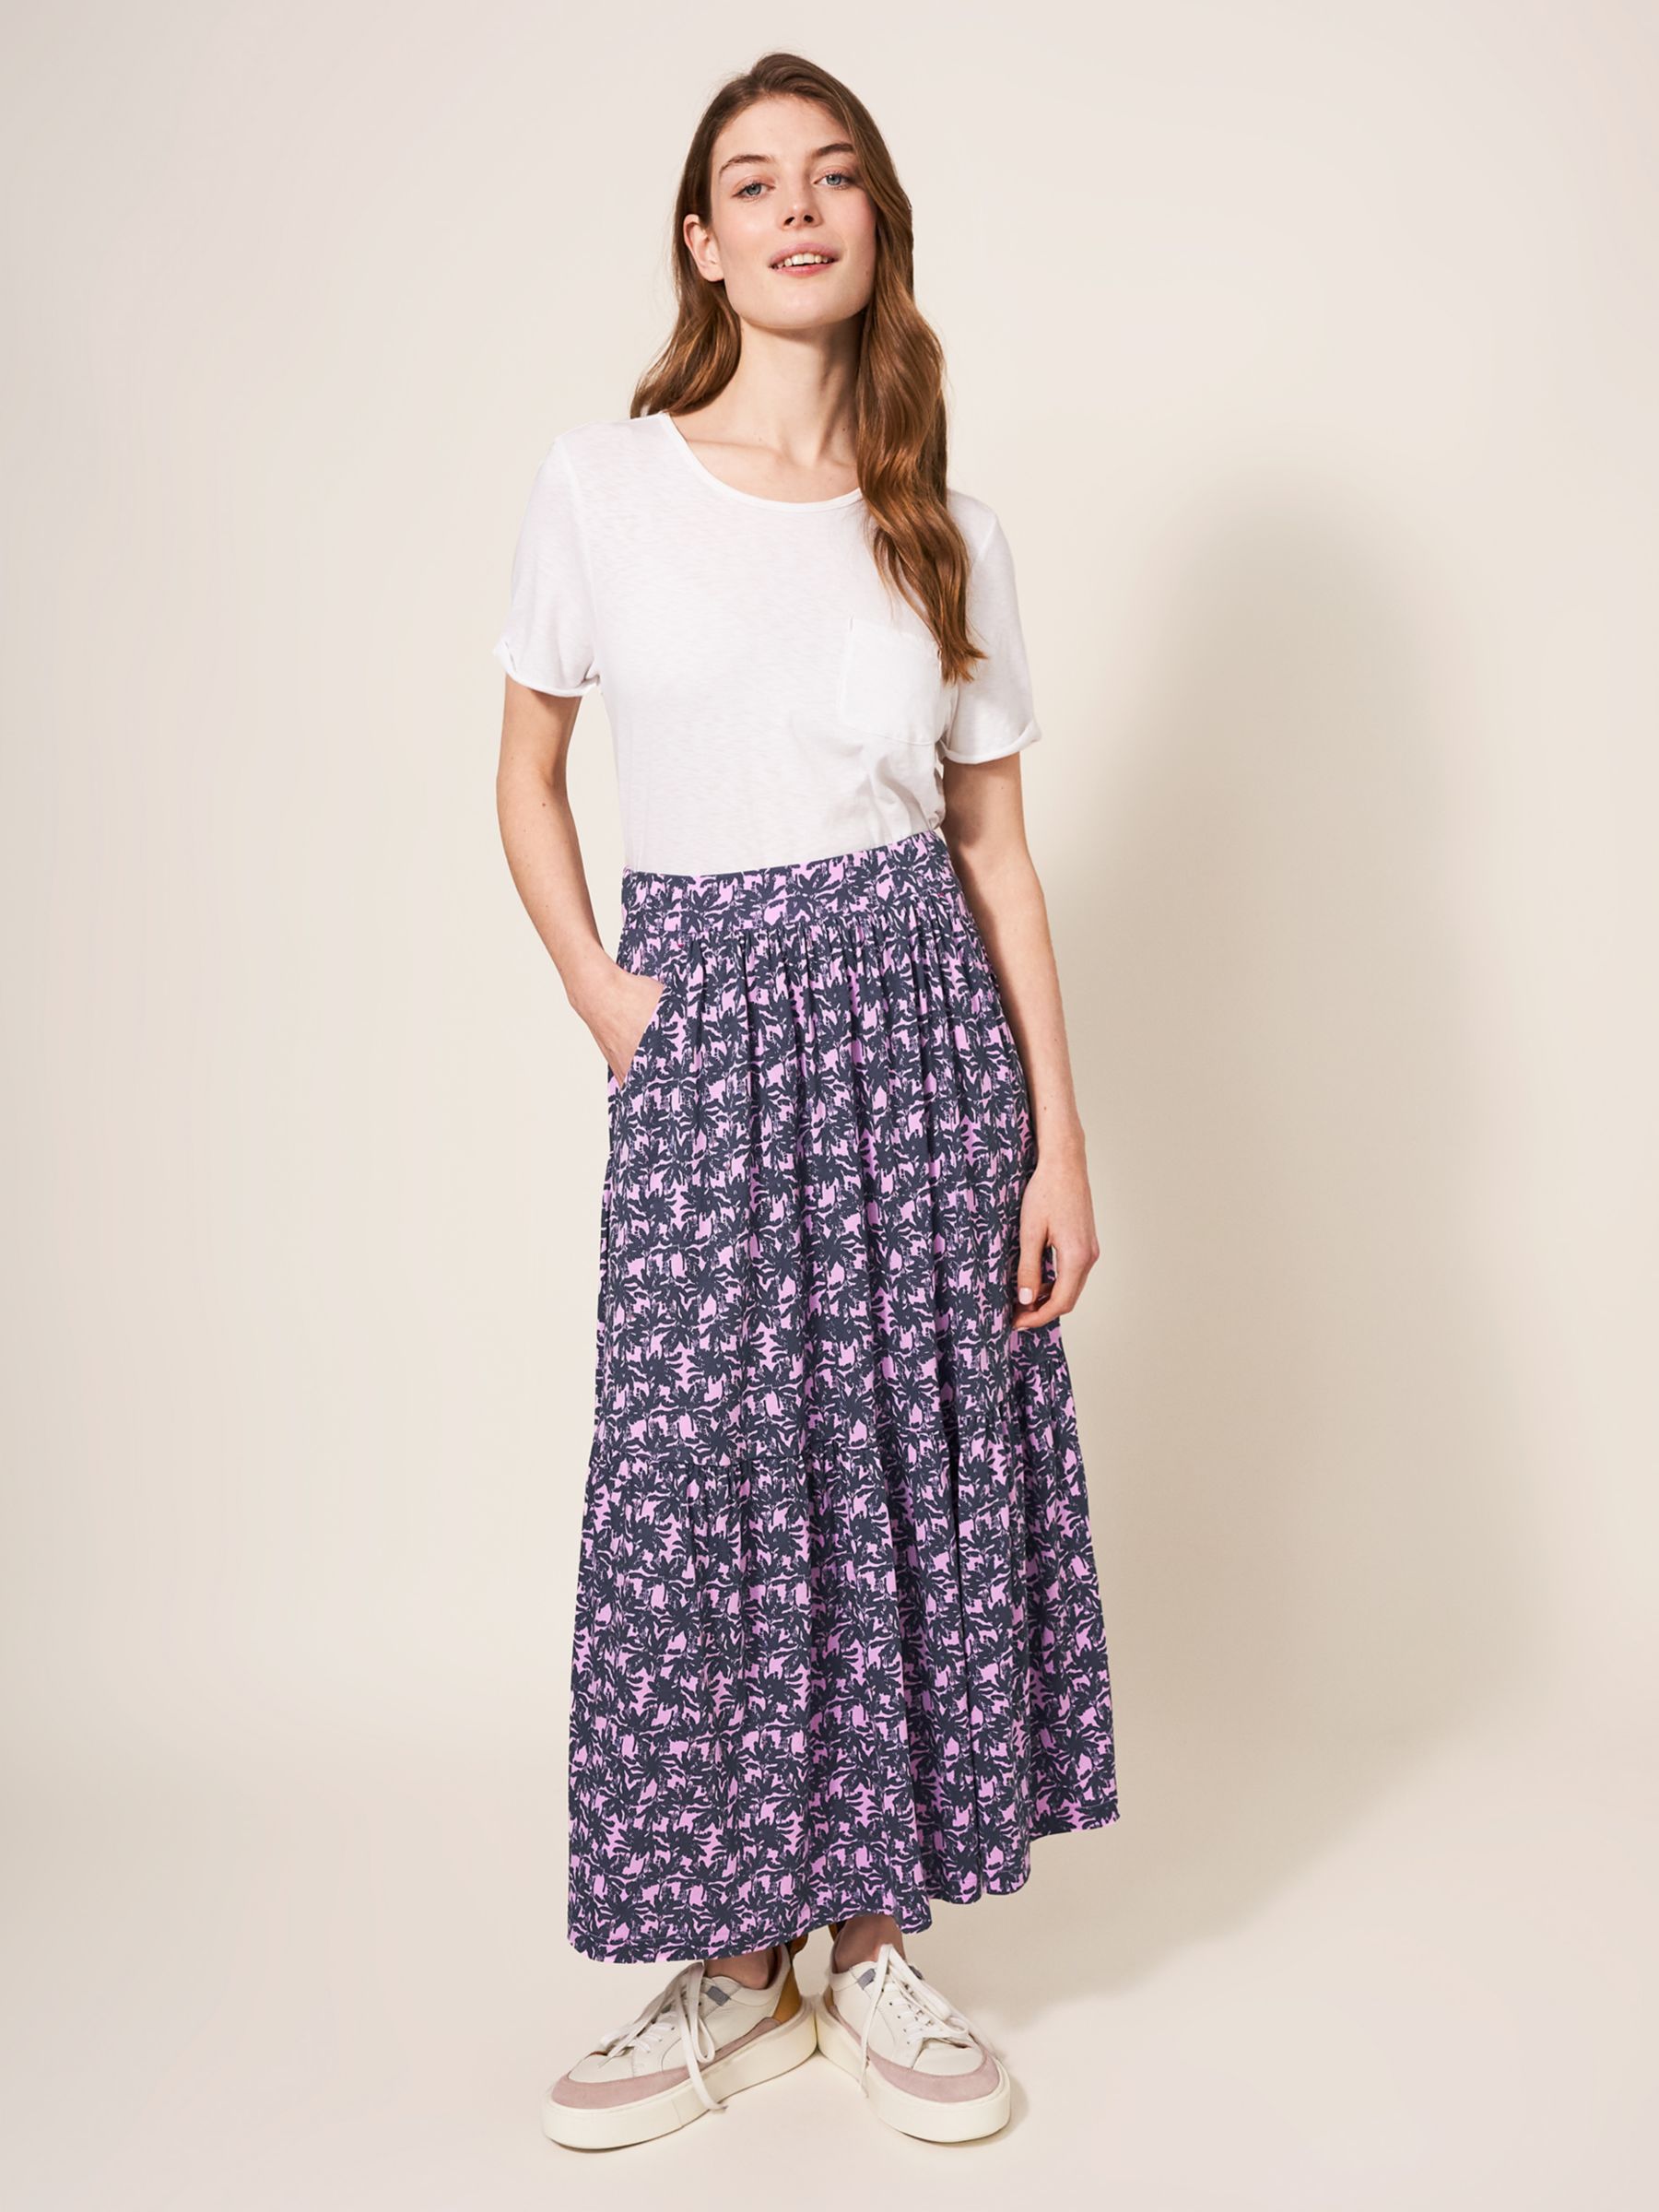 White Stuff Mia Jersey Maxi Skirt, Pink/Multi, 6